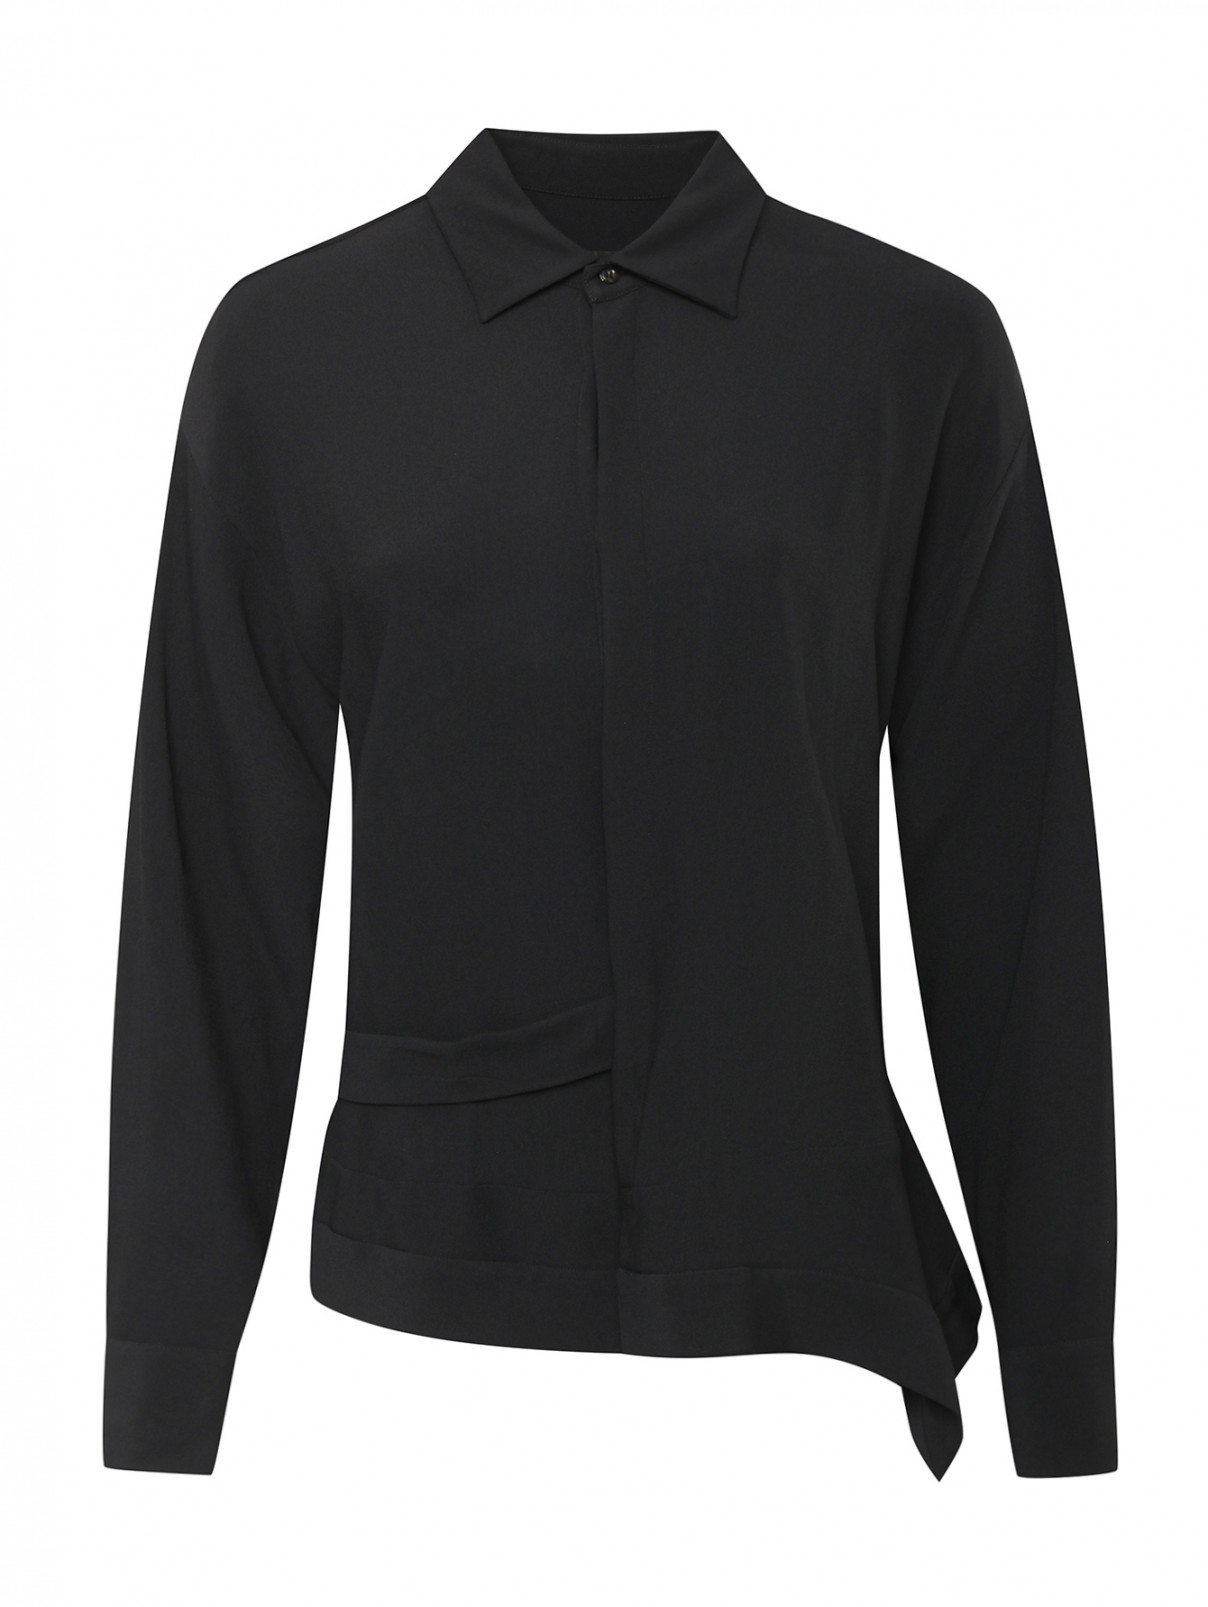 Однотонная блуза с поясом Dsquared2  –  Общий вид  – Цвет:  Черный